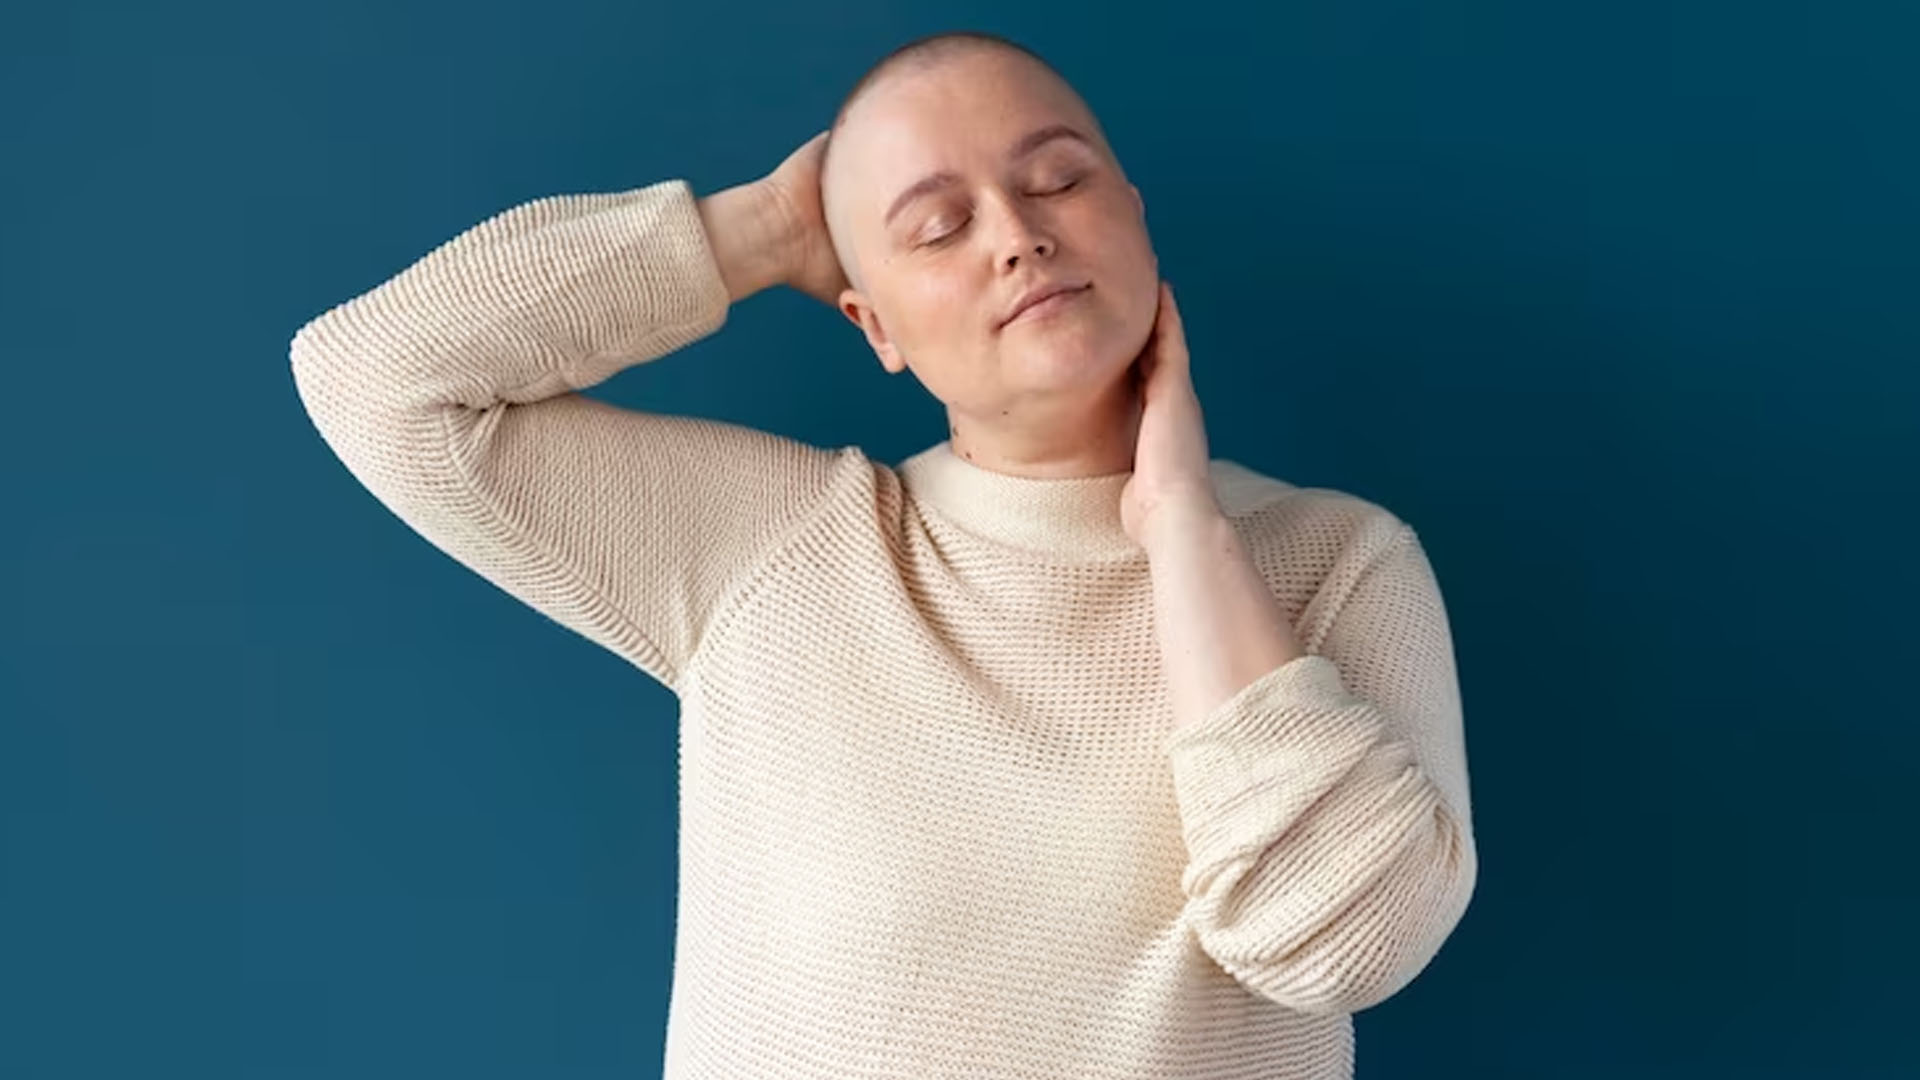 Is Headache a Symptom of Cancer?